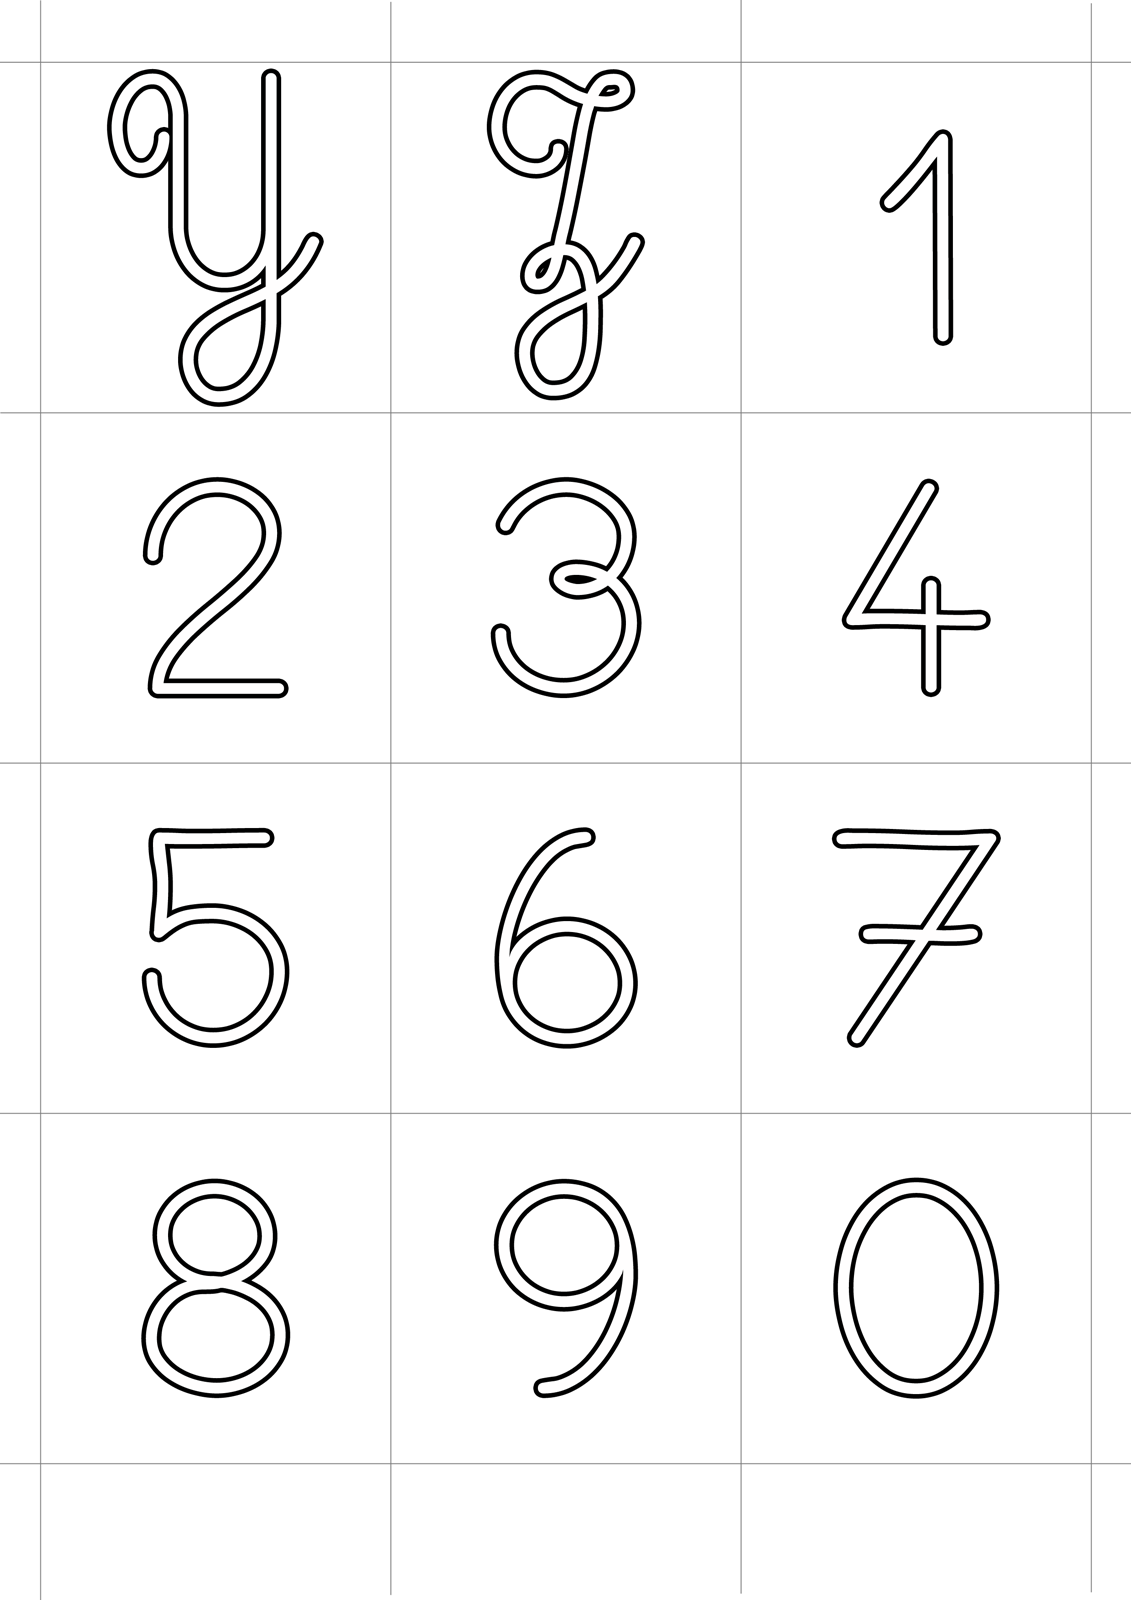 Lettere e numeri - Lettere corsivo maiuscolo dalla Y alla Z e numeri dallo 0 al 9